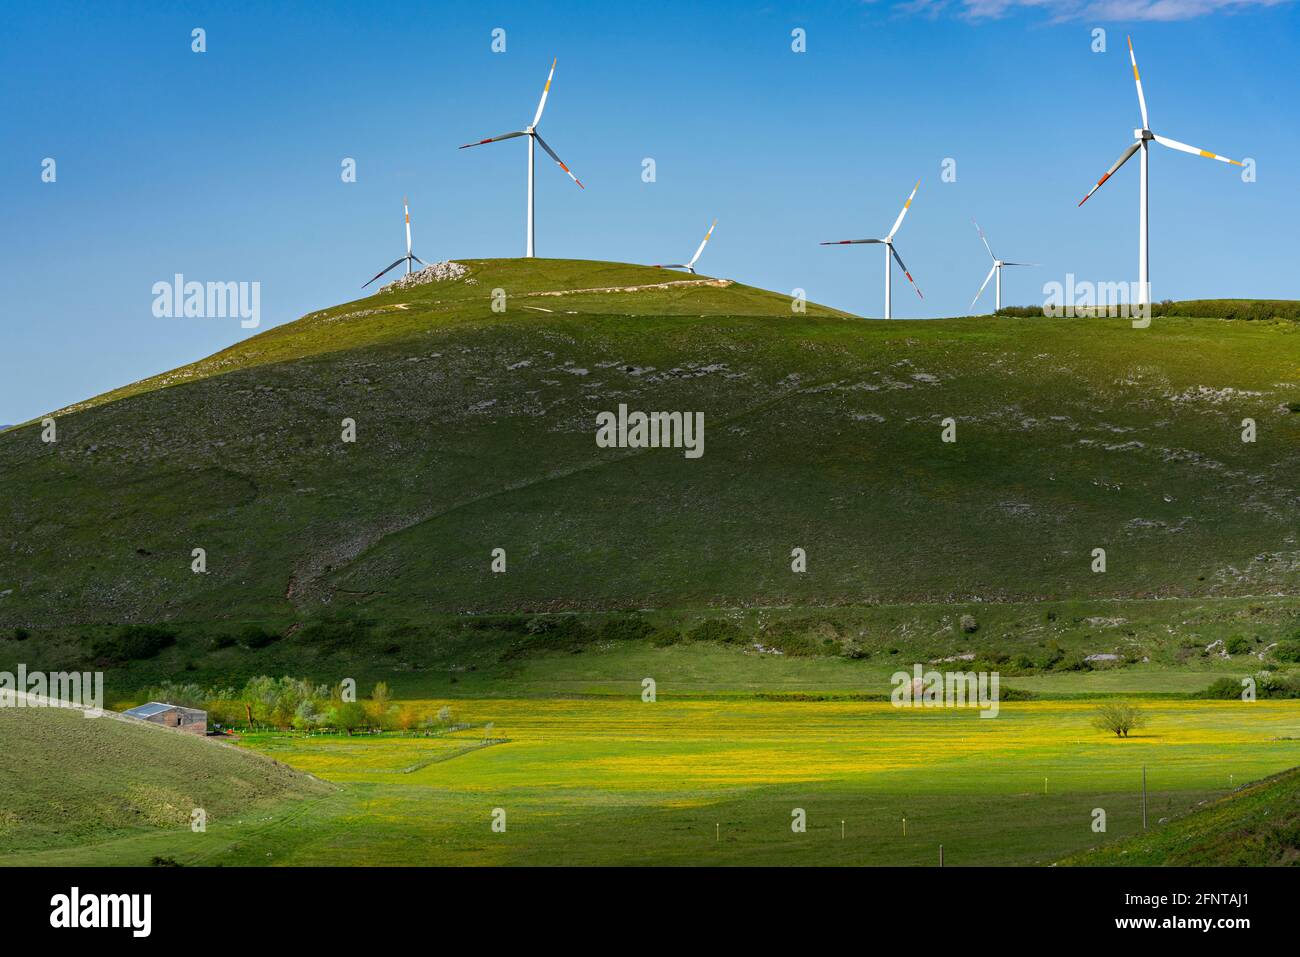 Panorama di campi verdi e gialli con colline e turbine eoliche in cima. Gioco di luce e ombra. Abruzzo, Italia, Europa Foto Stock